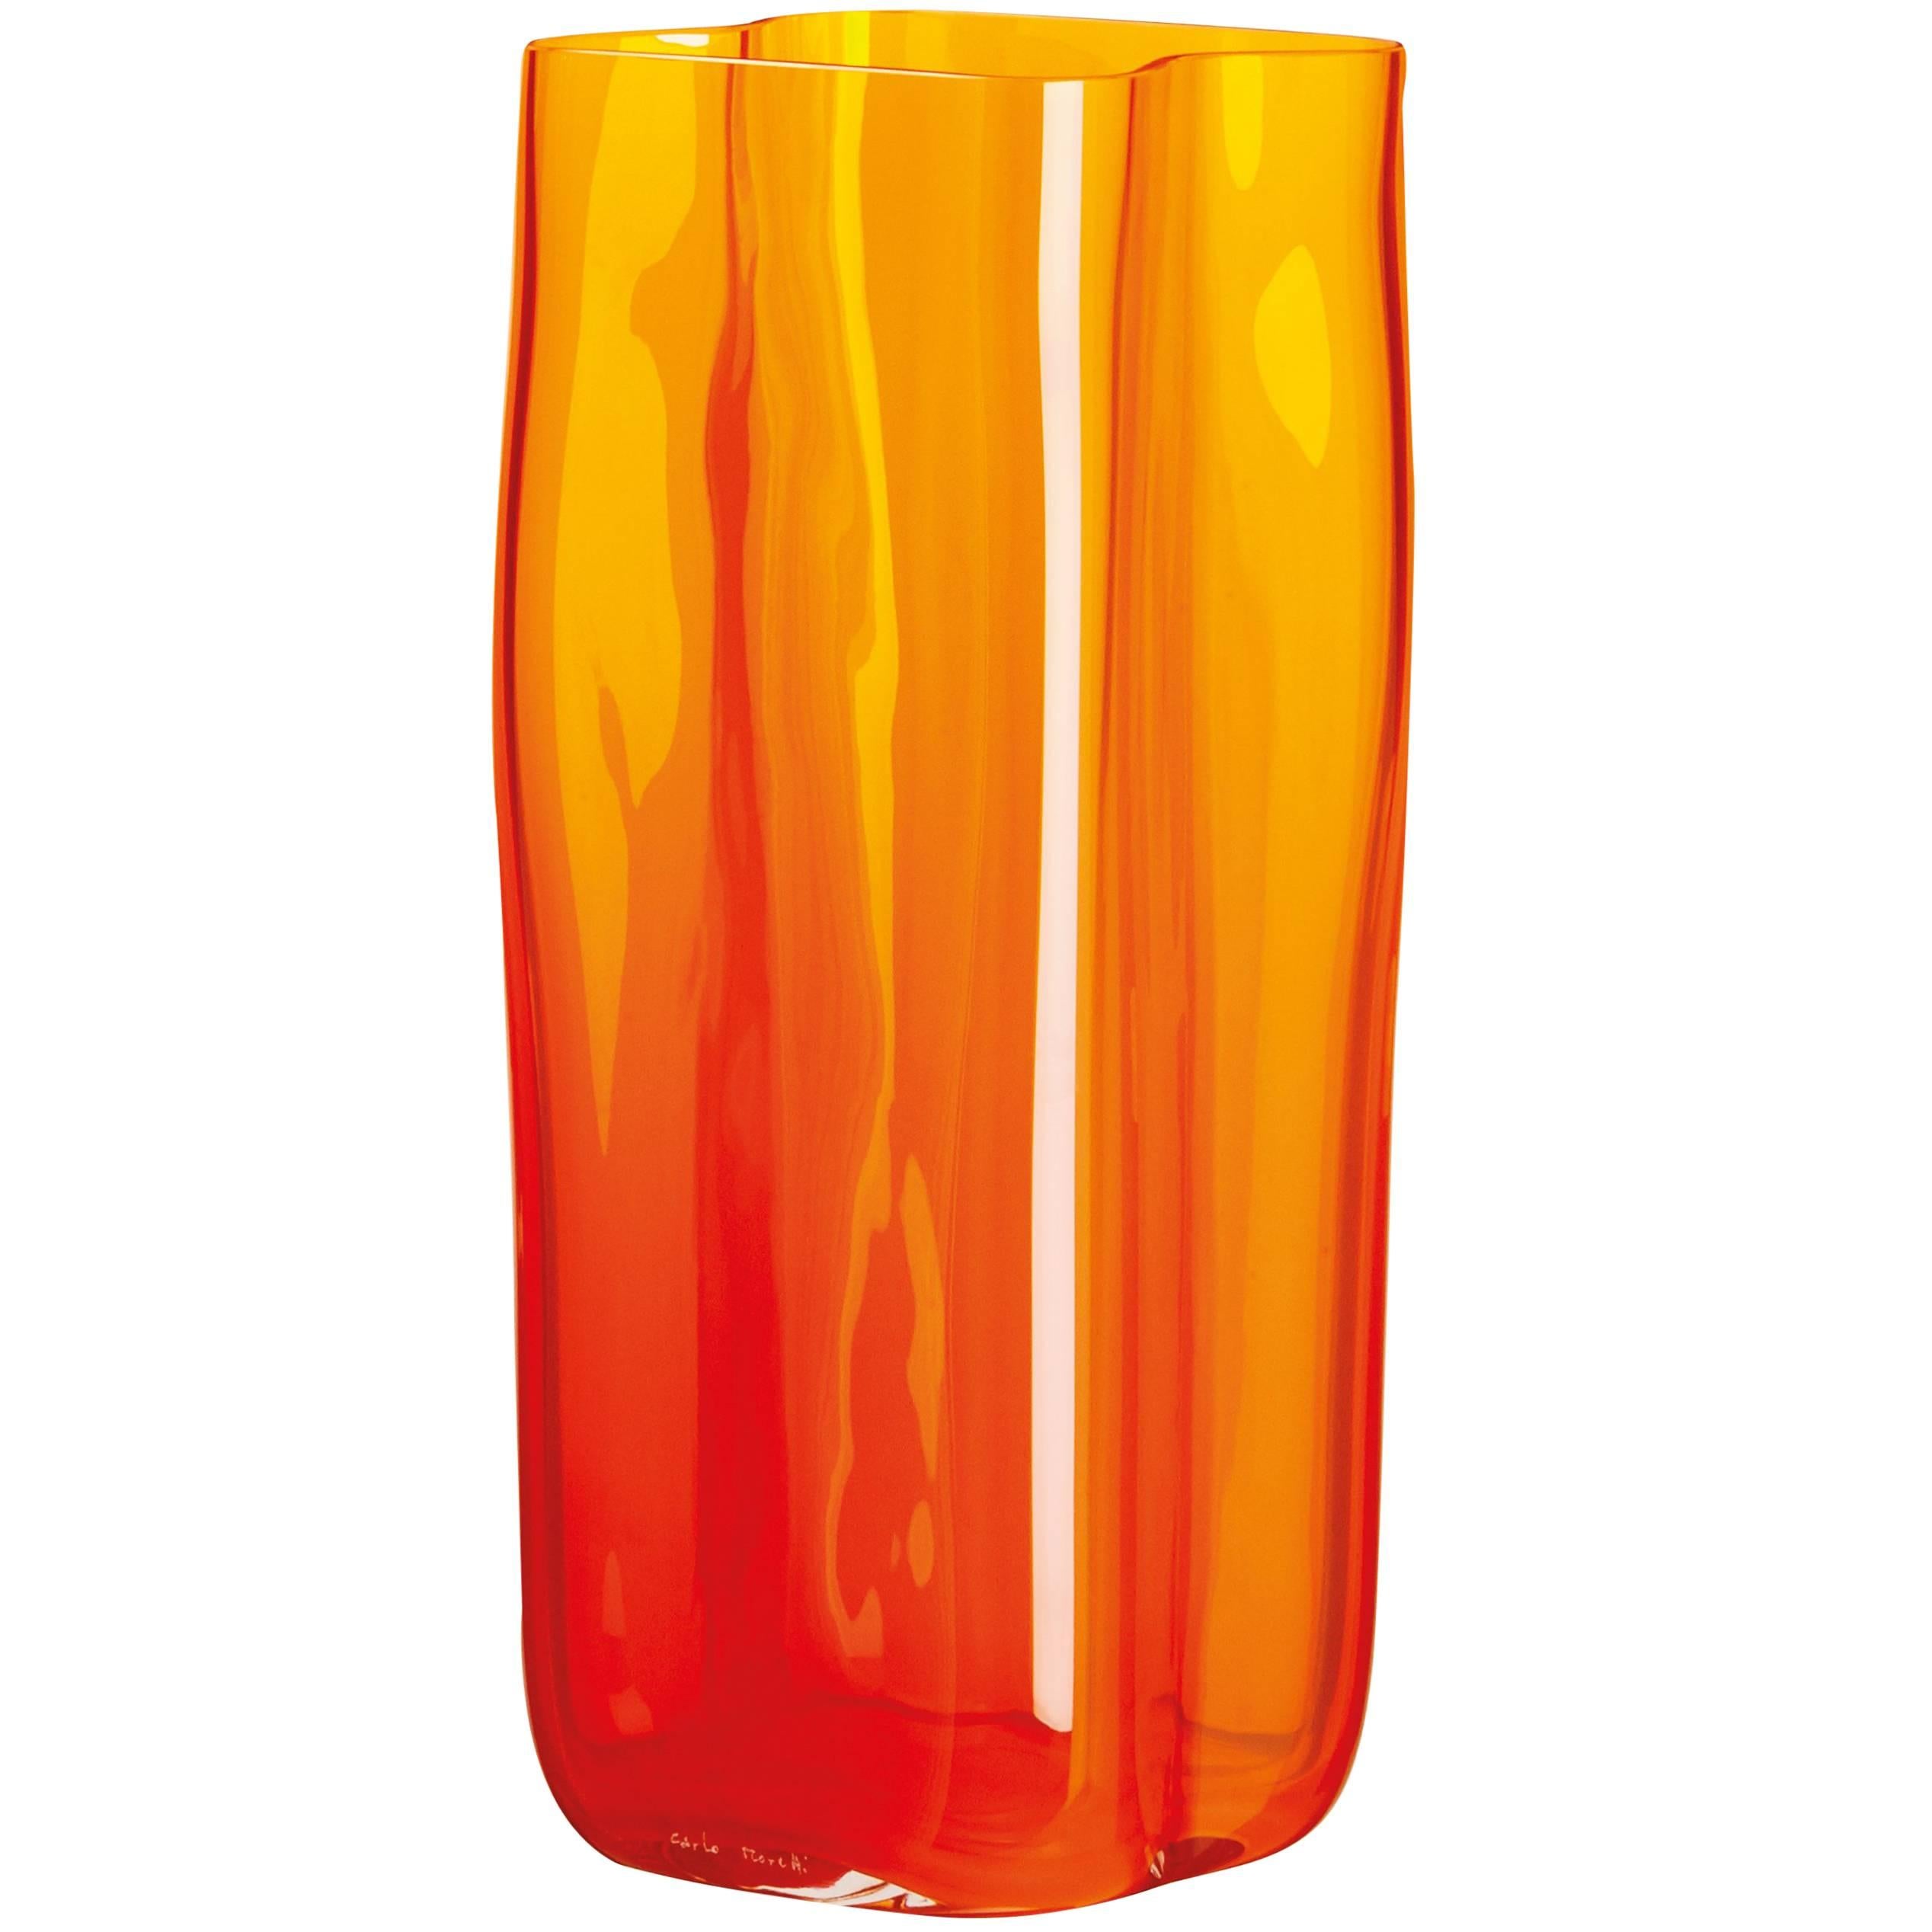 Bosco Carlo Moretti Contemporary Mouth Blown Murano Glass Vase in Orange